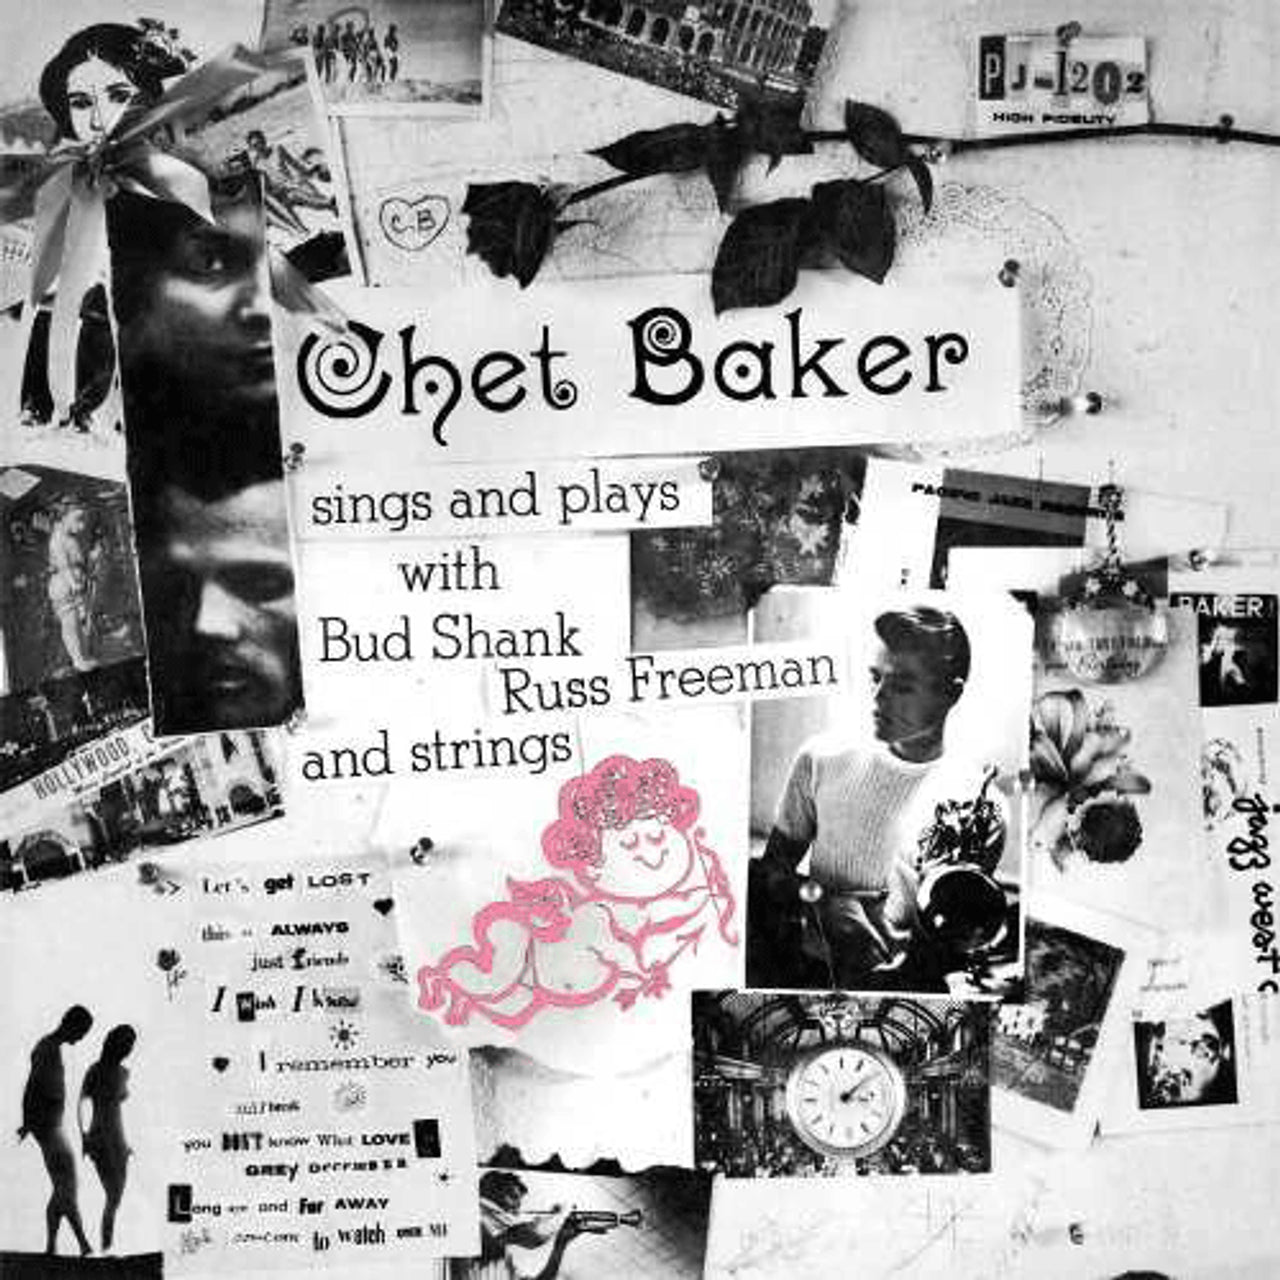 Chet Baker - Chet Baker canta y toca - Tone Poet LP 